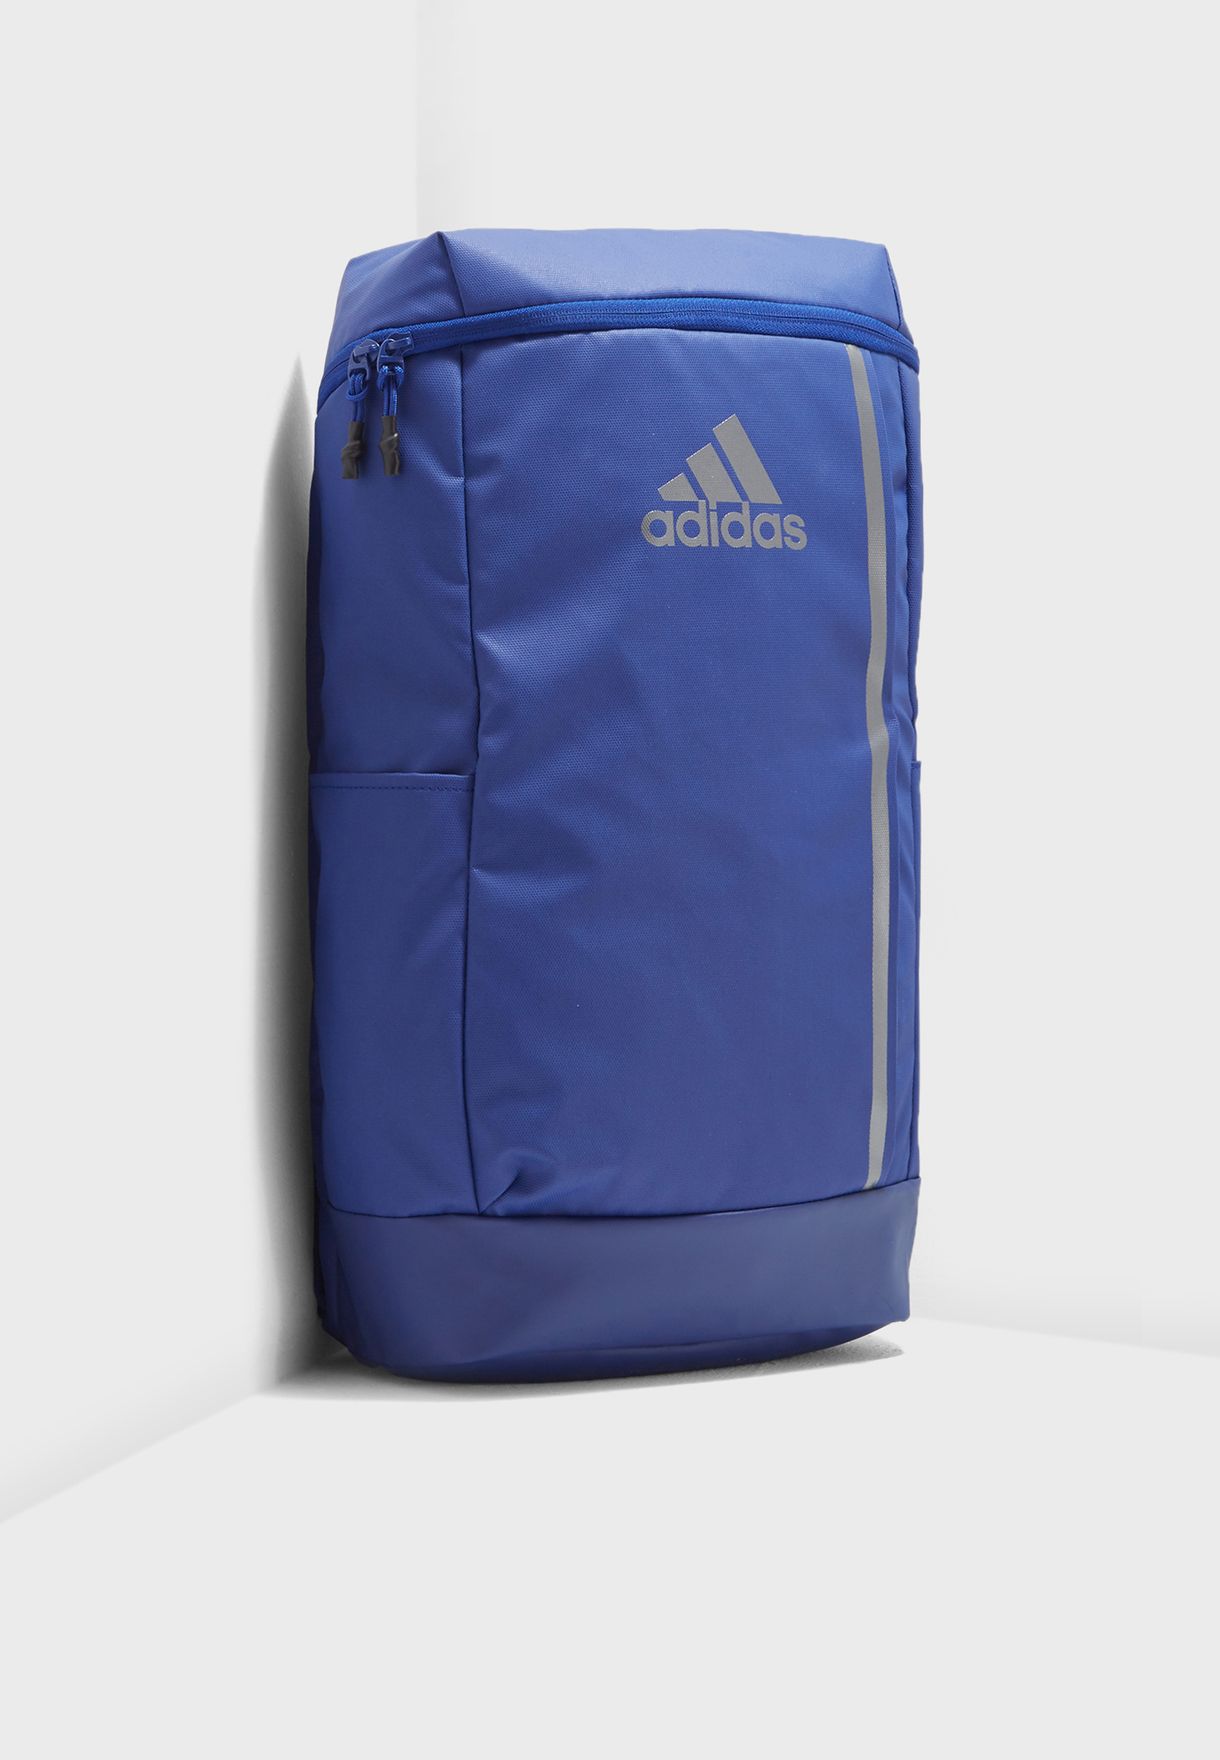 training backpack adidas